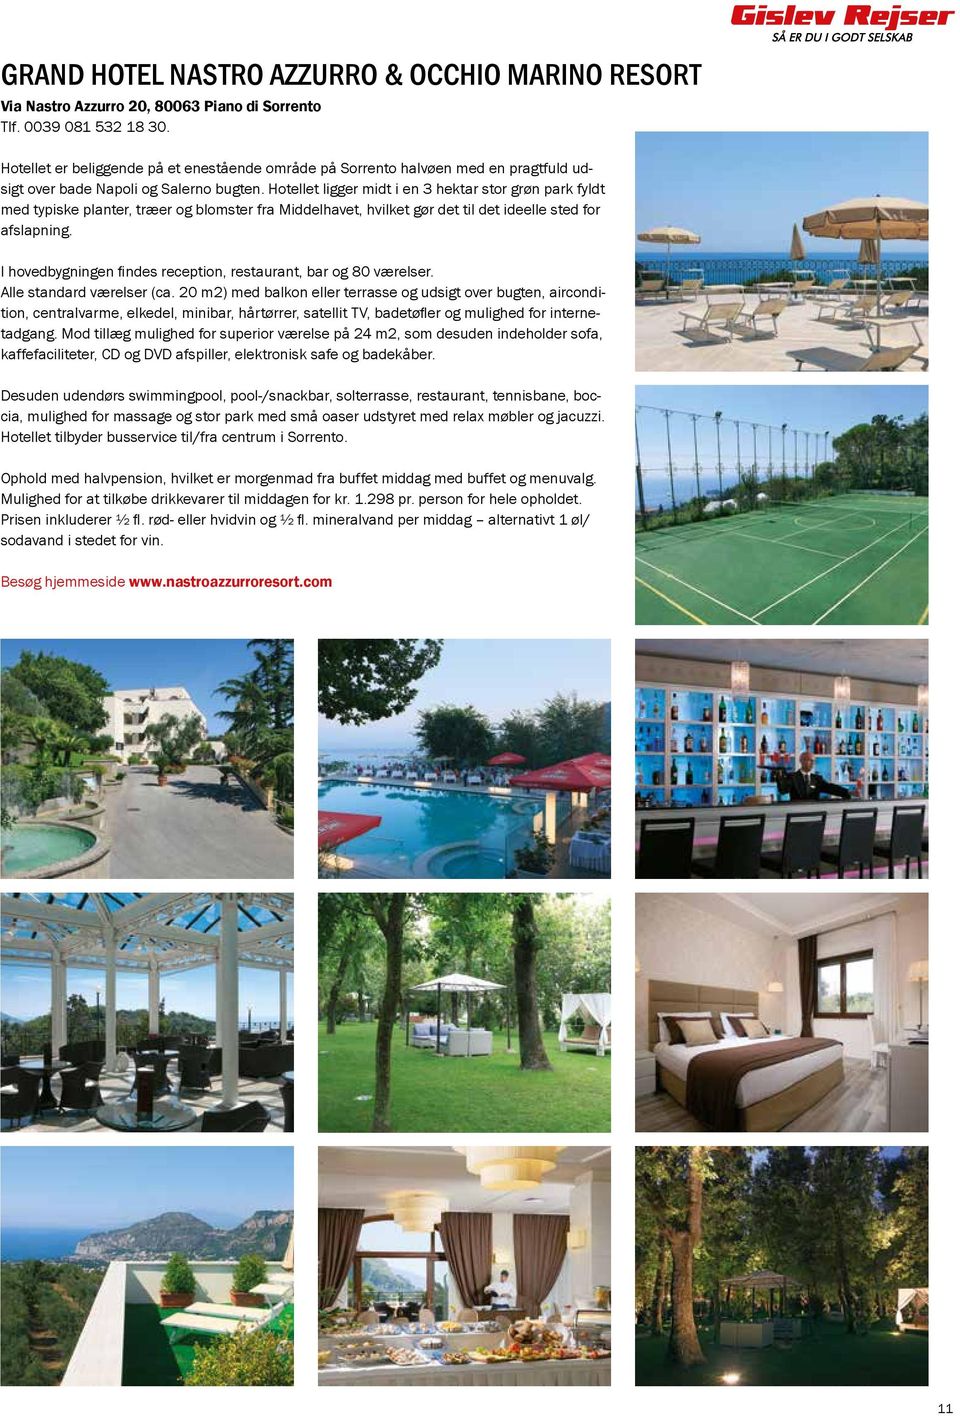 Hotellet ligger midt i en 3 hektar stor grøn park fyldt med typiske planter, træer og blomster fra Middelhavet, hvilket gør det til det ideelle sted for afslapning.